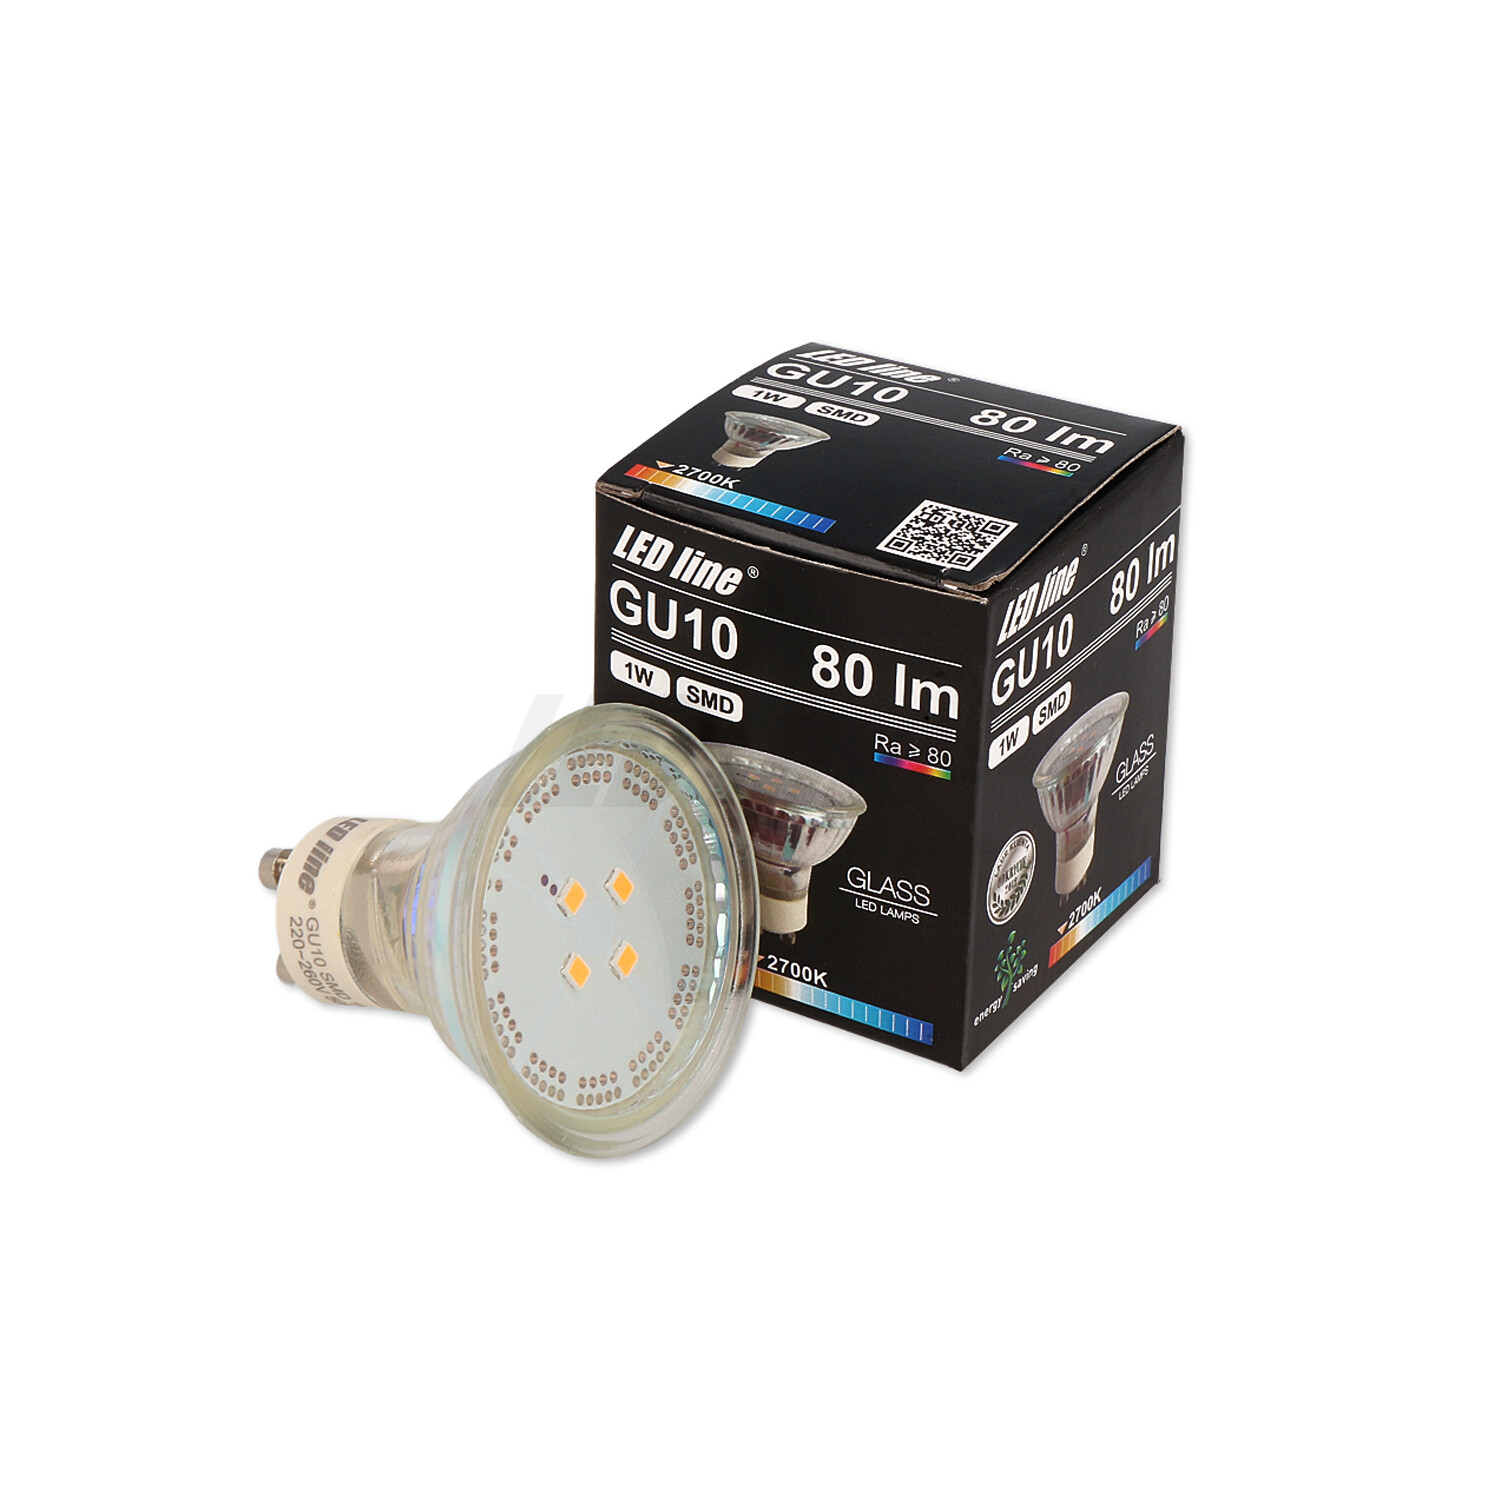 LED LINE Warmweiß LED Lumen 1W 10x SMD 80 GU10 120° Leuchtmittel